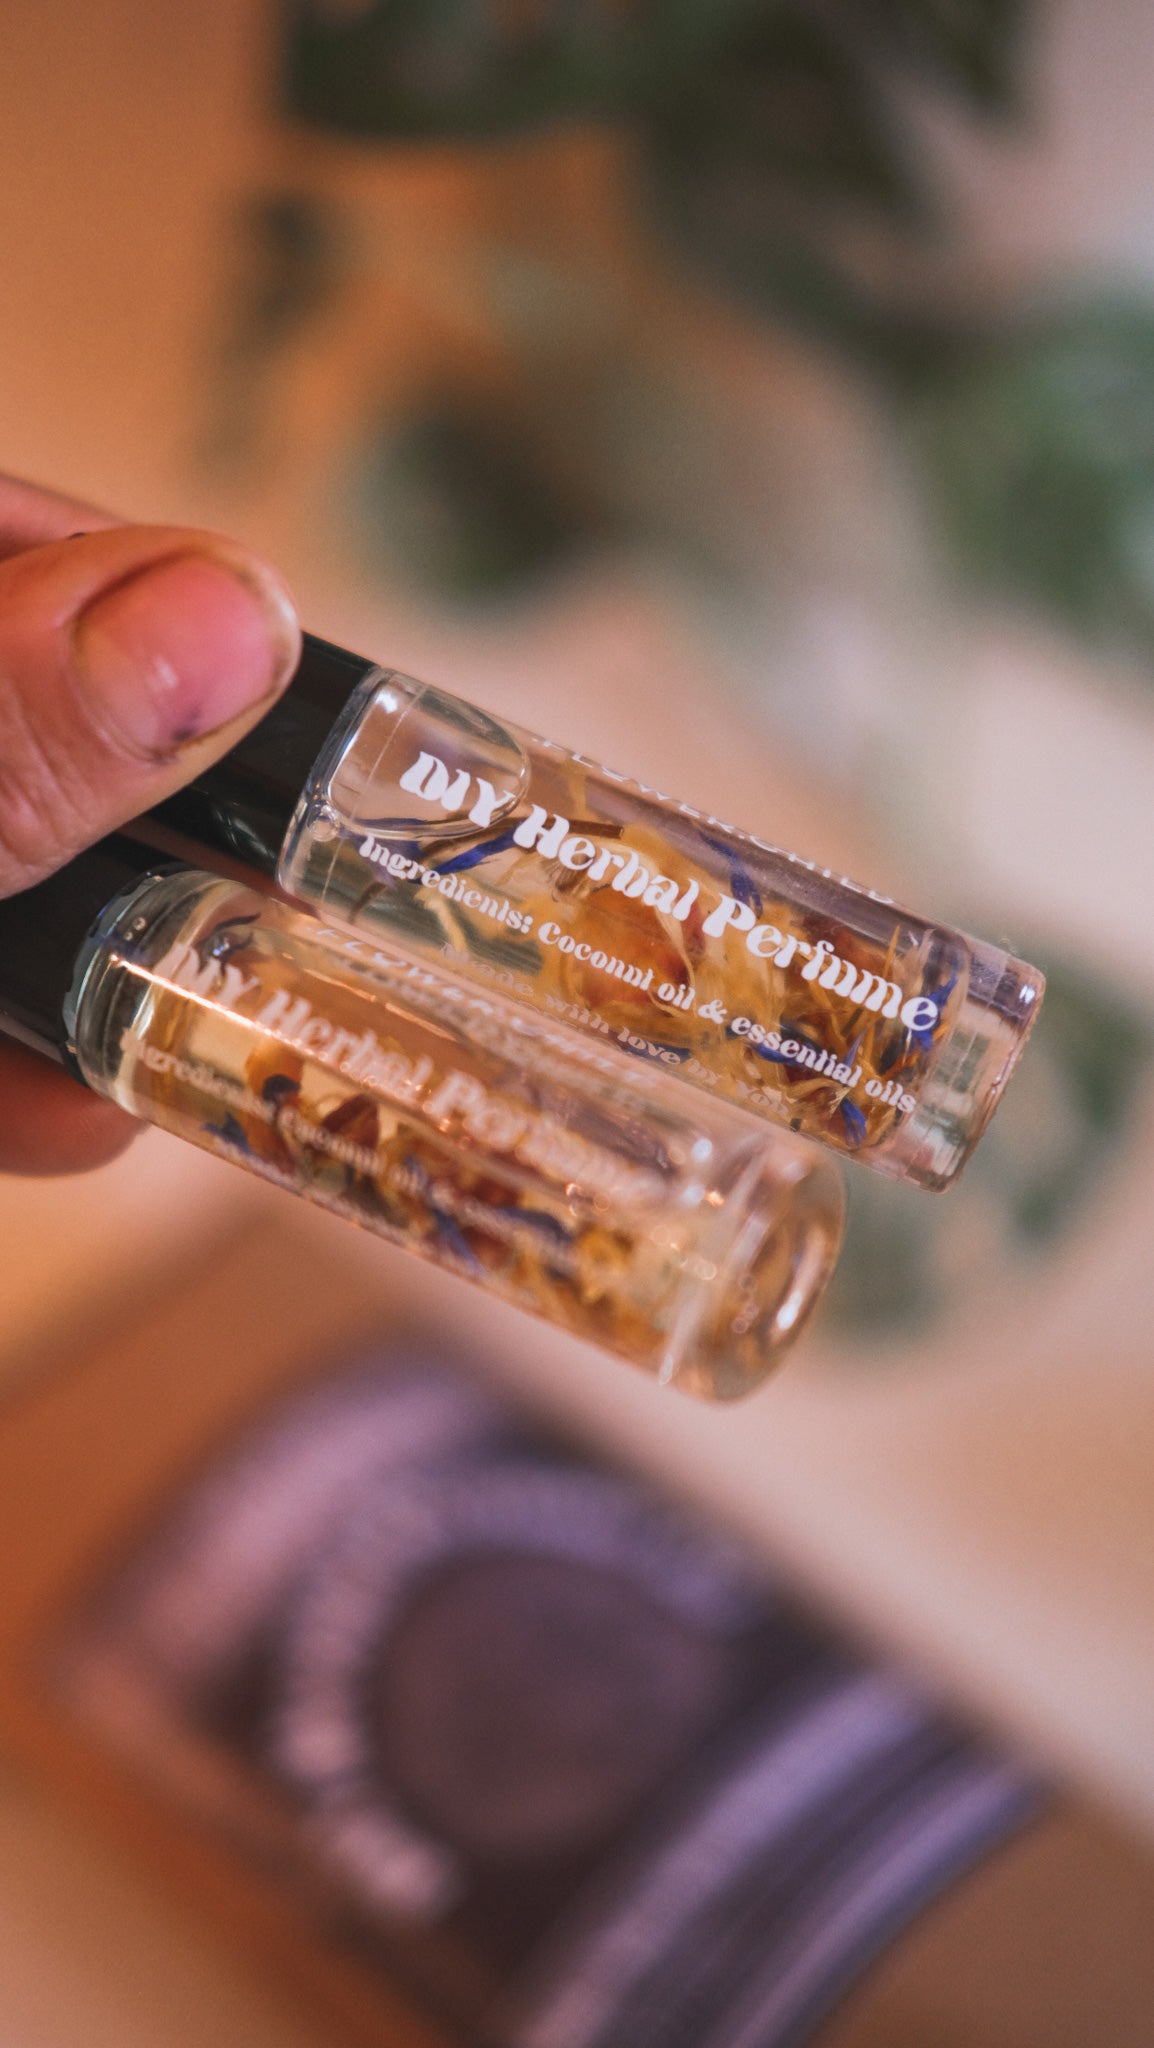 DIY Herbal Perfume Kit + Essential Oils